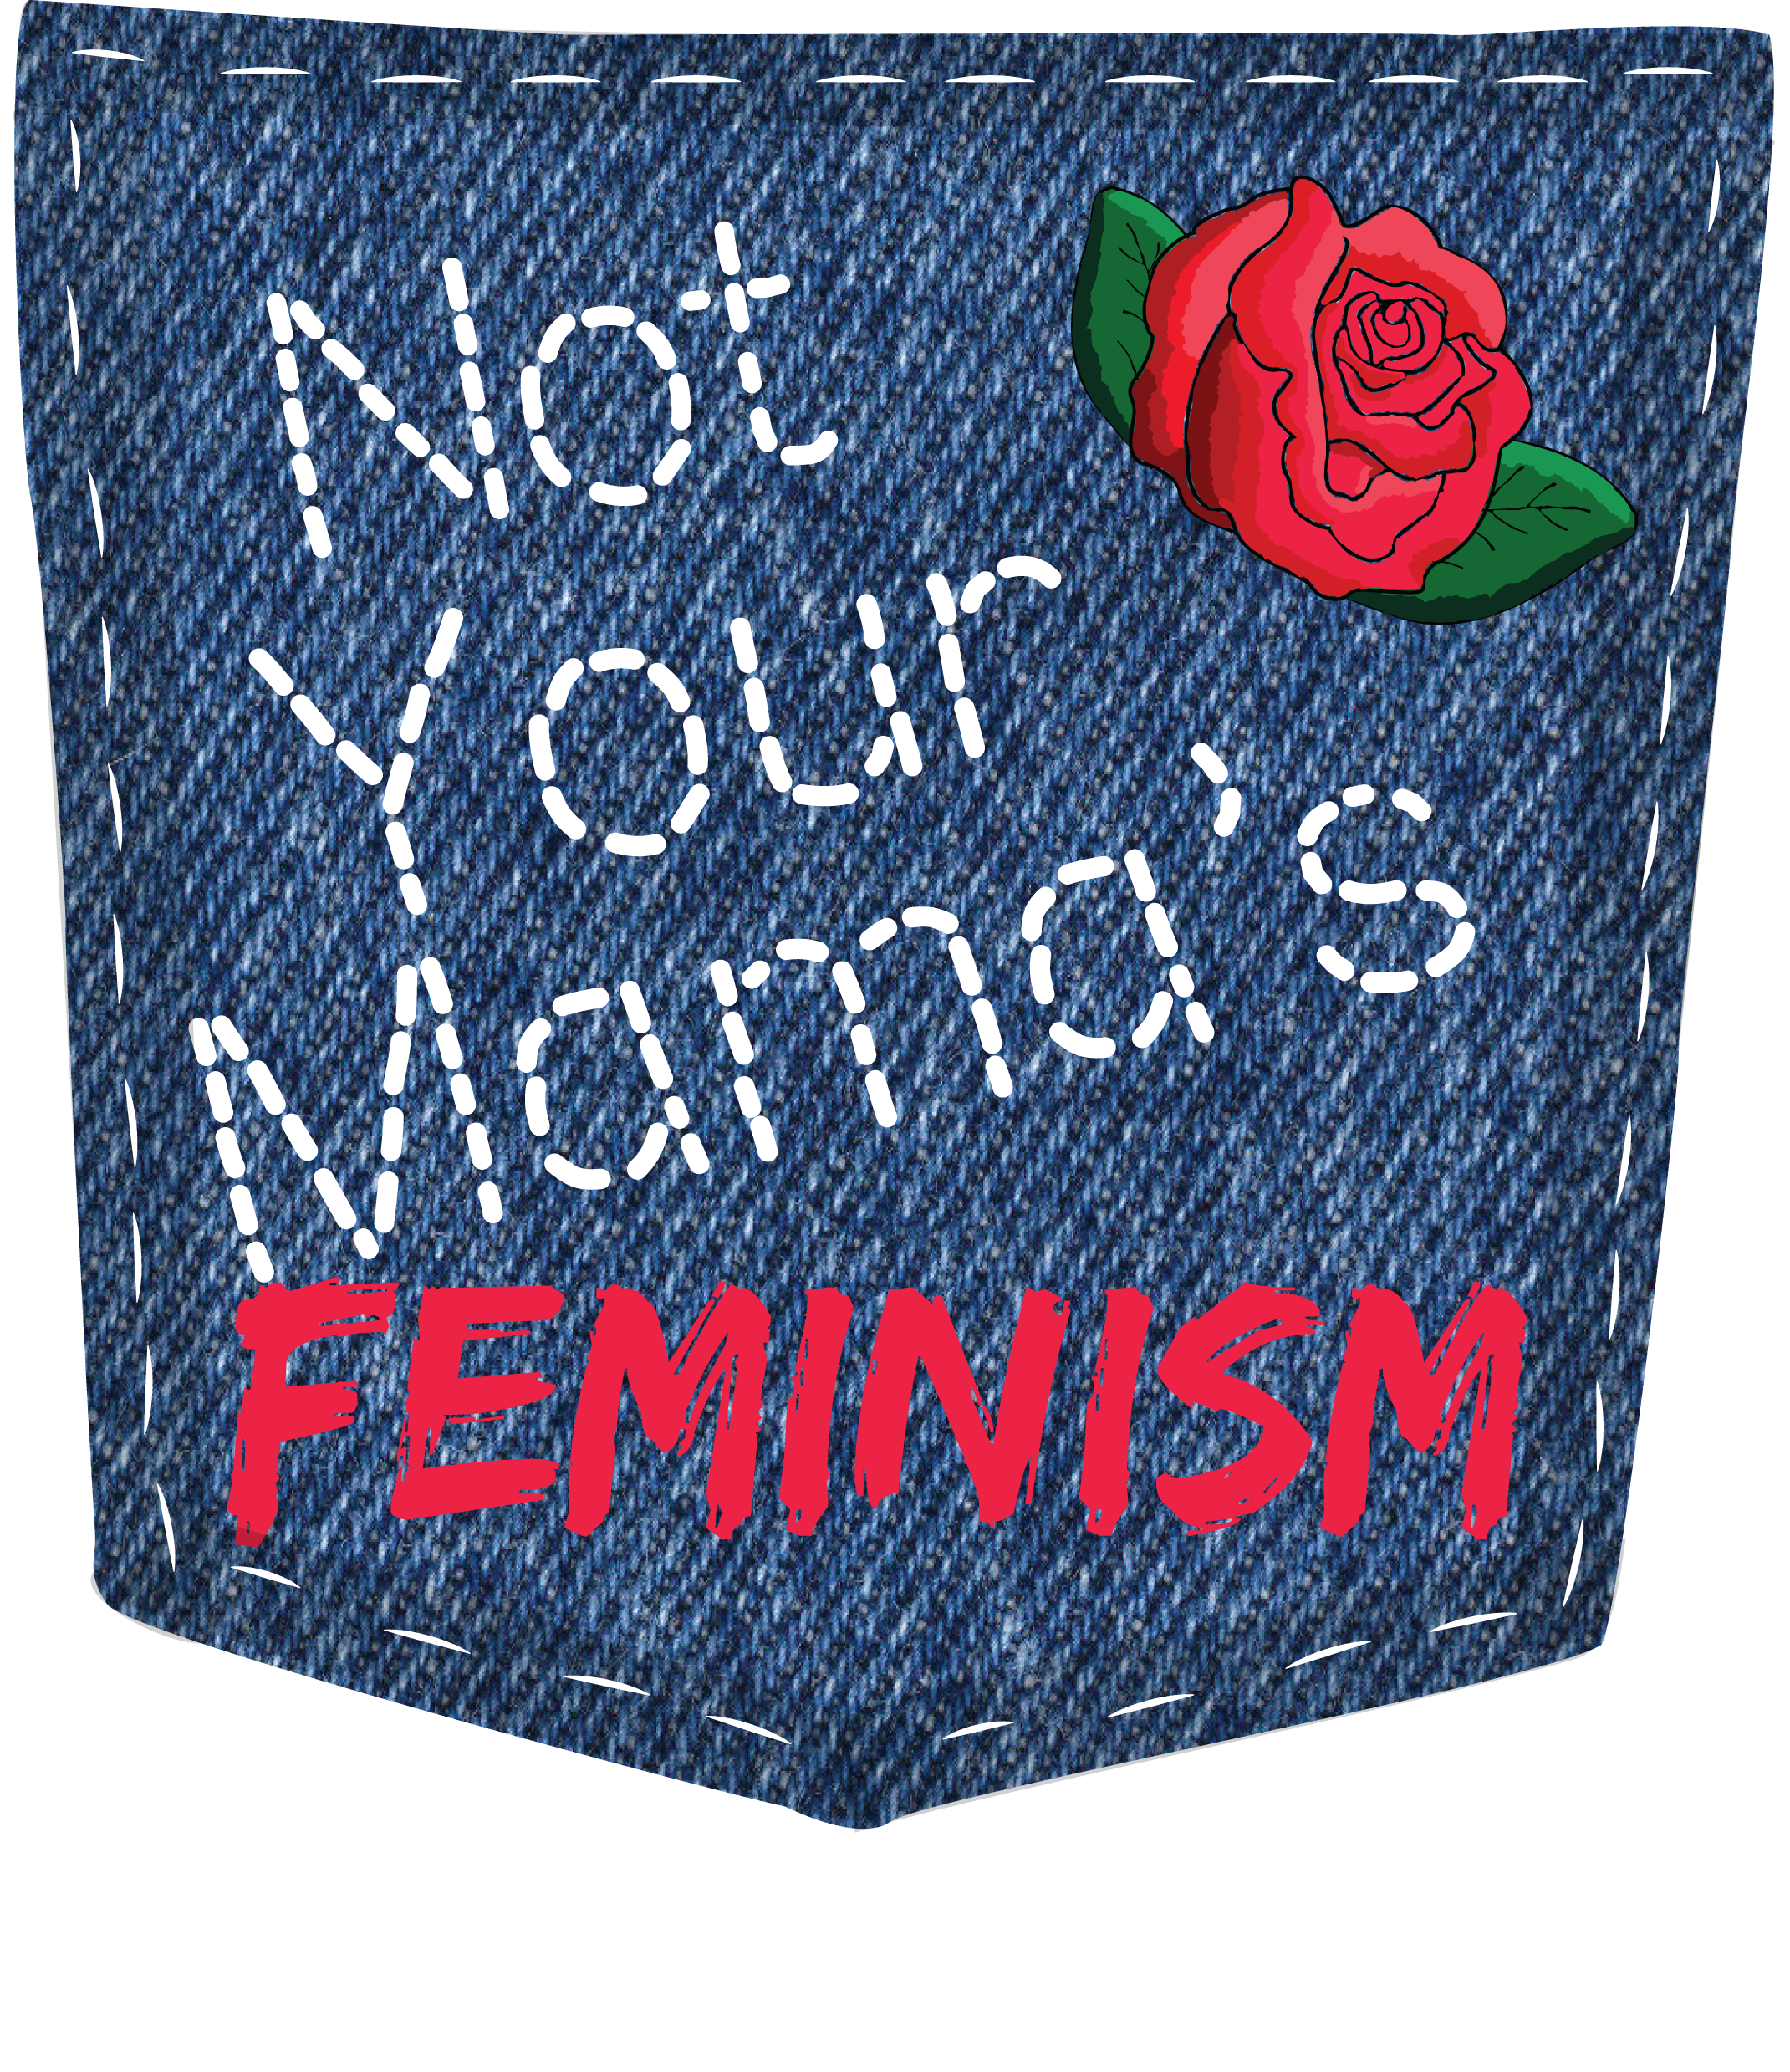 feministcolumngraphic-copy